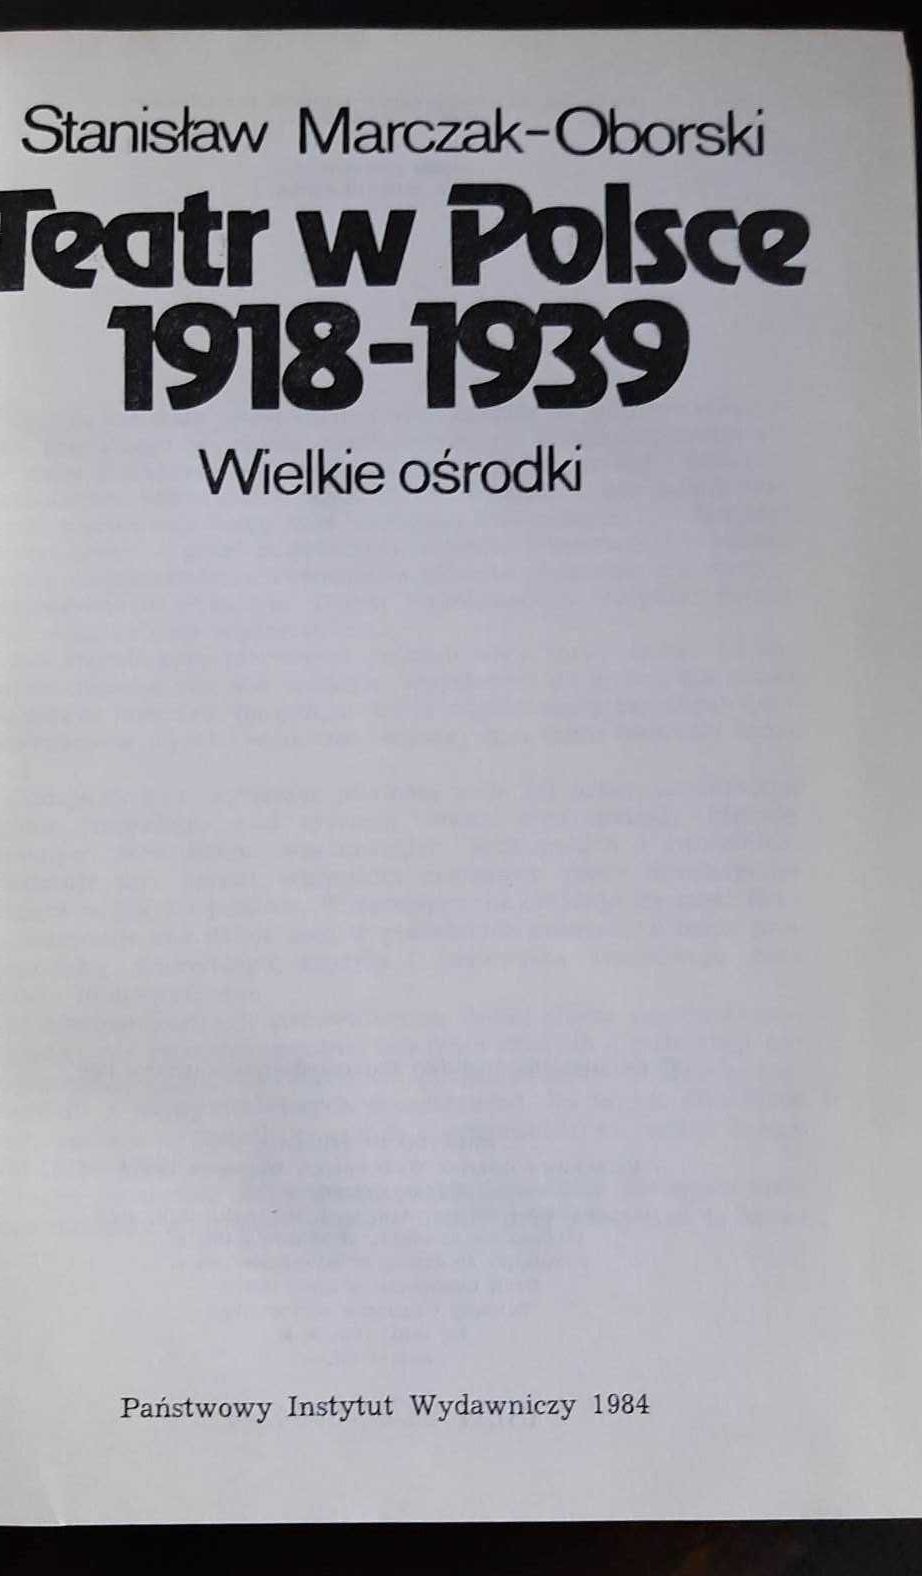 Teatr w Polsce 1918/1939 - Stanisław Marczak - Oborski